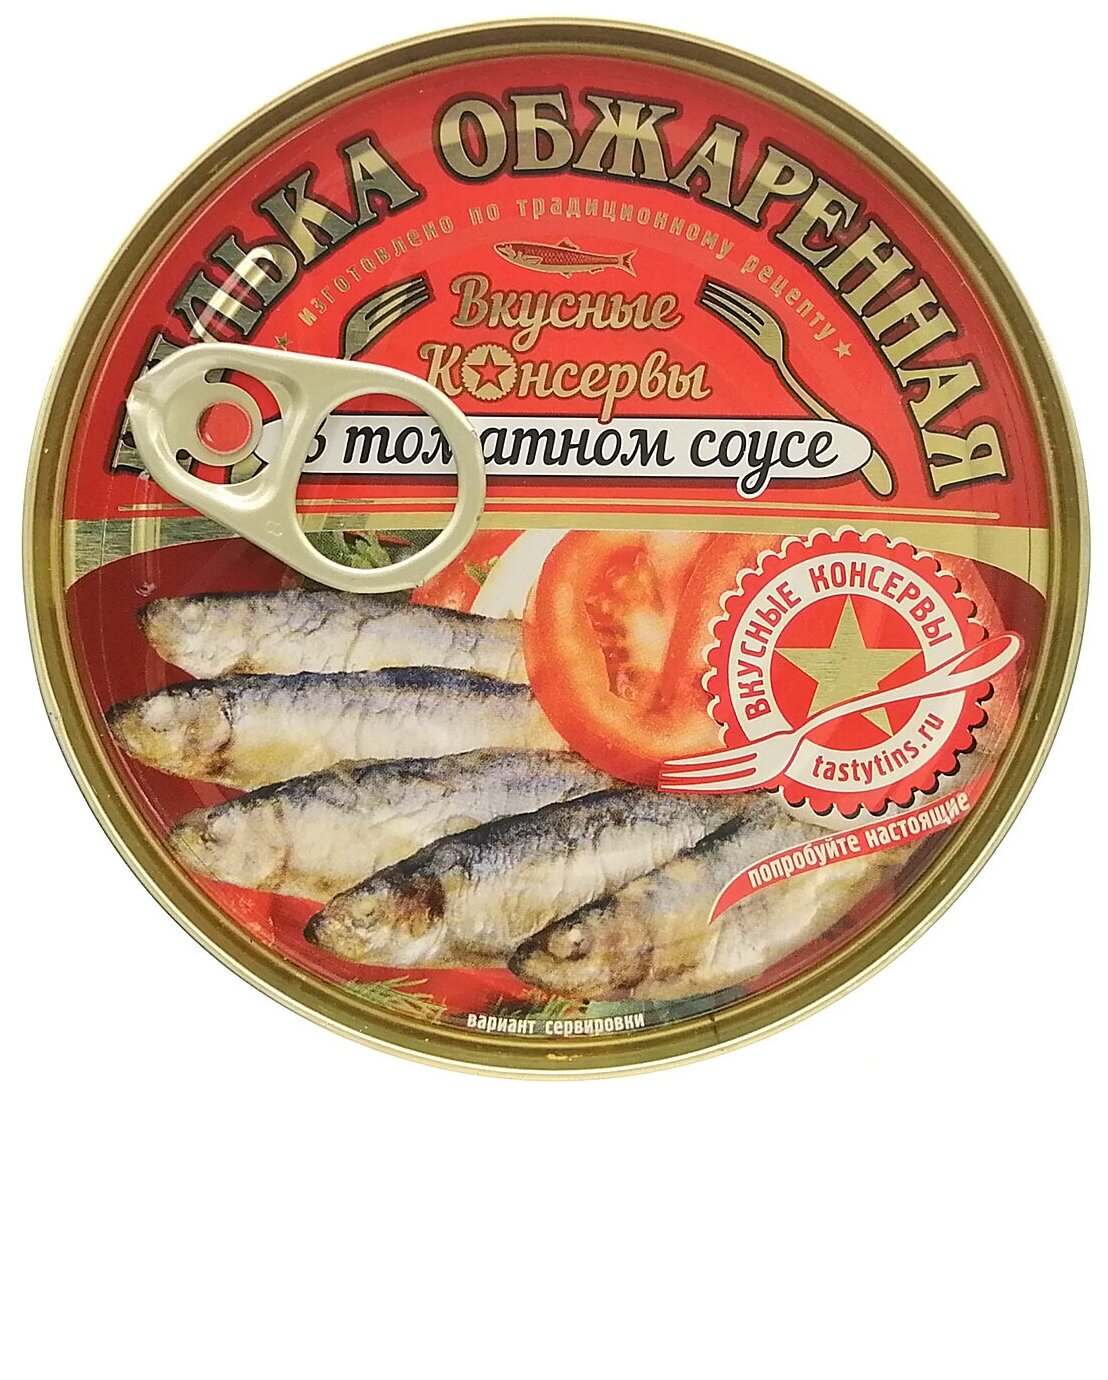 Консервы рыбные "Вкусные консервы" - Килька обжаренная в томатном соусе, 240 г - 2 шт